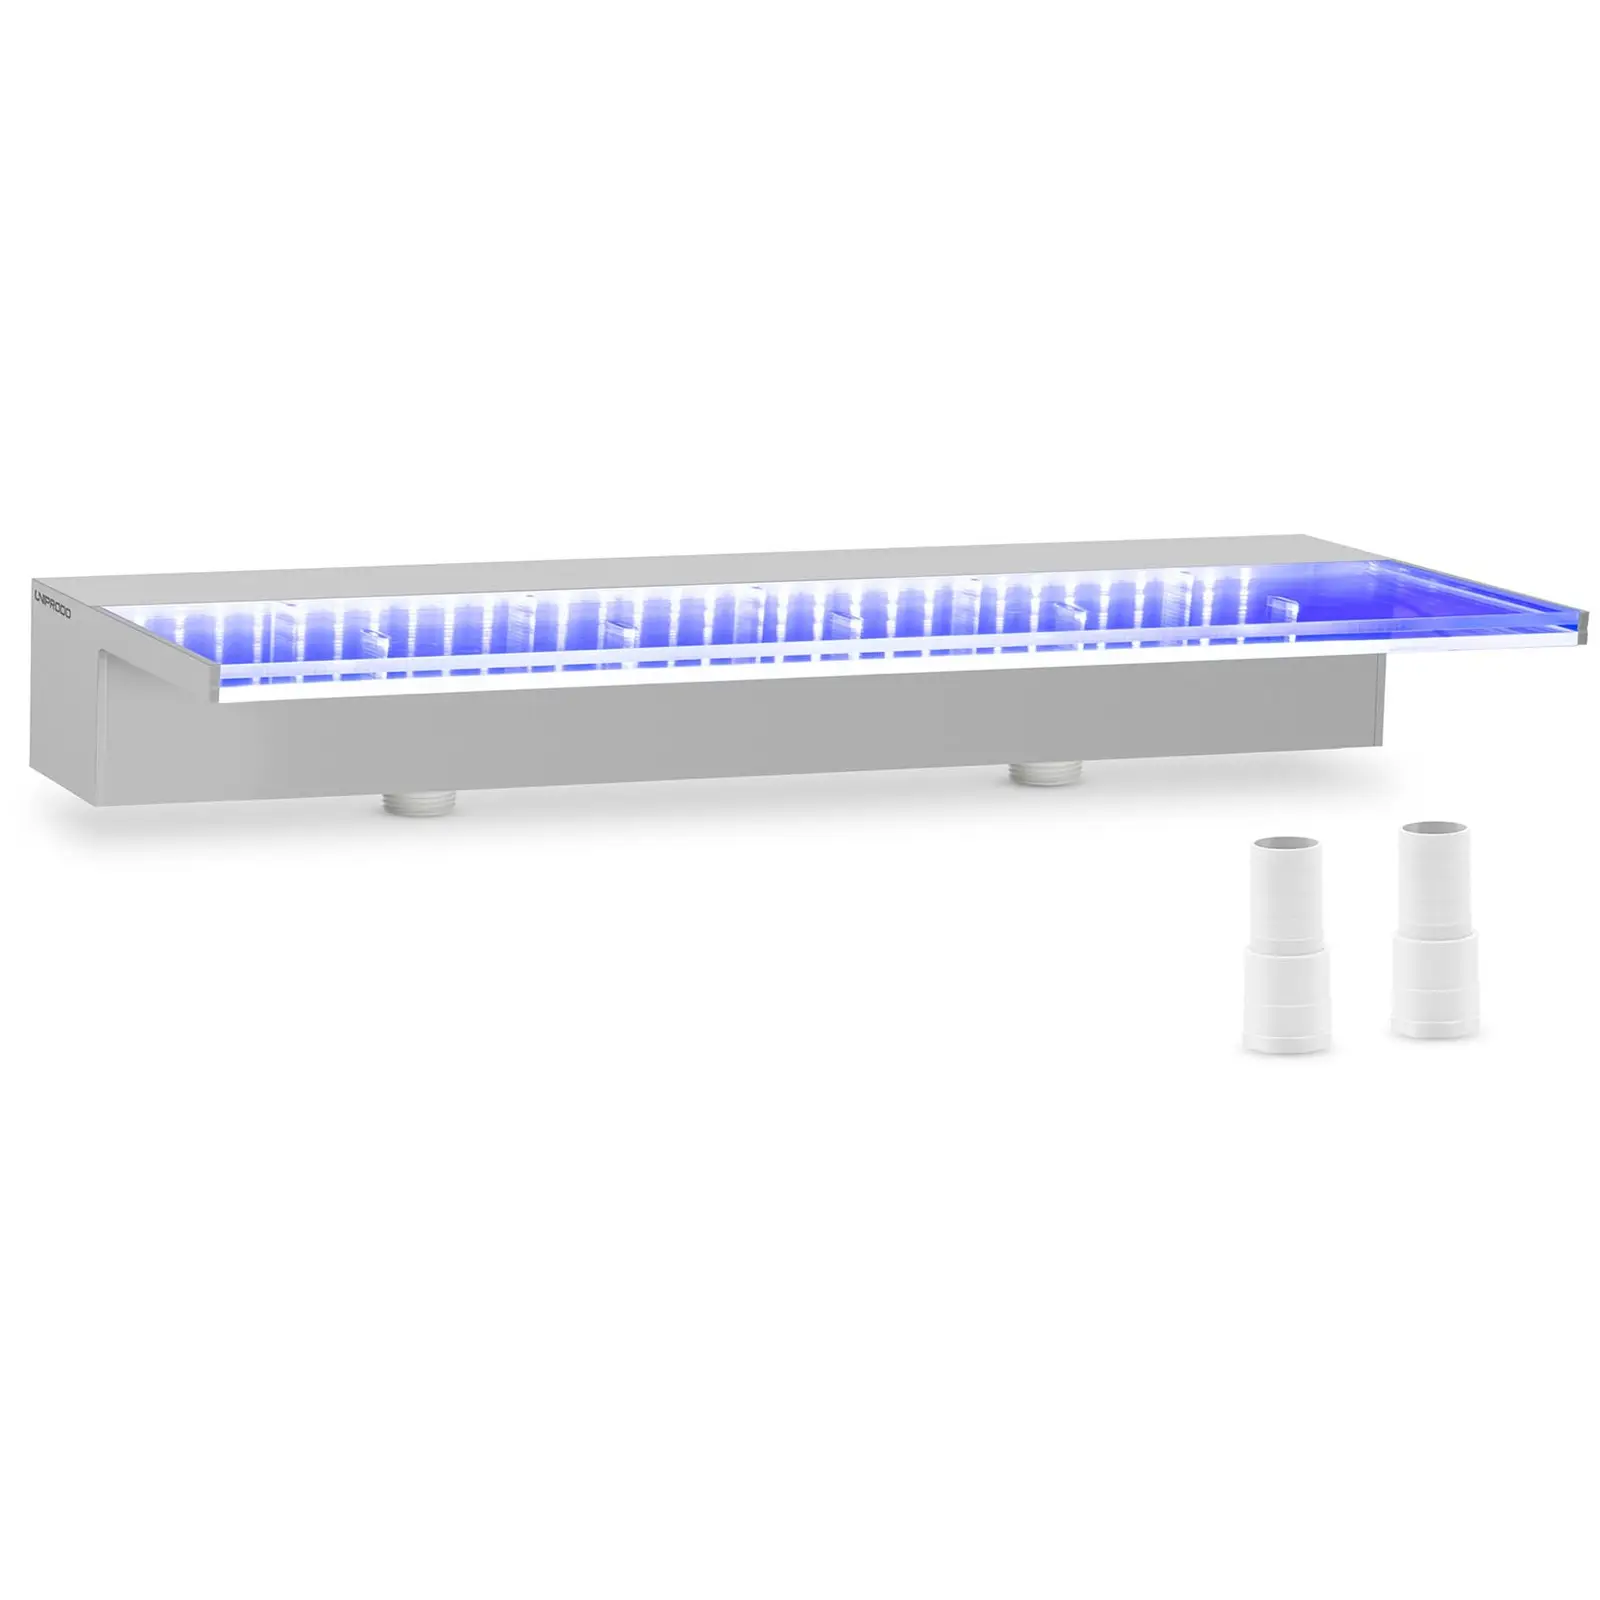 Schwalldusche - 60 cm - LED-Beleuchtung - Blau / Weiß - tiefer Wasserauslauf